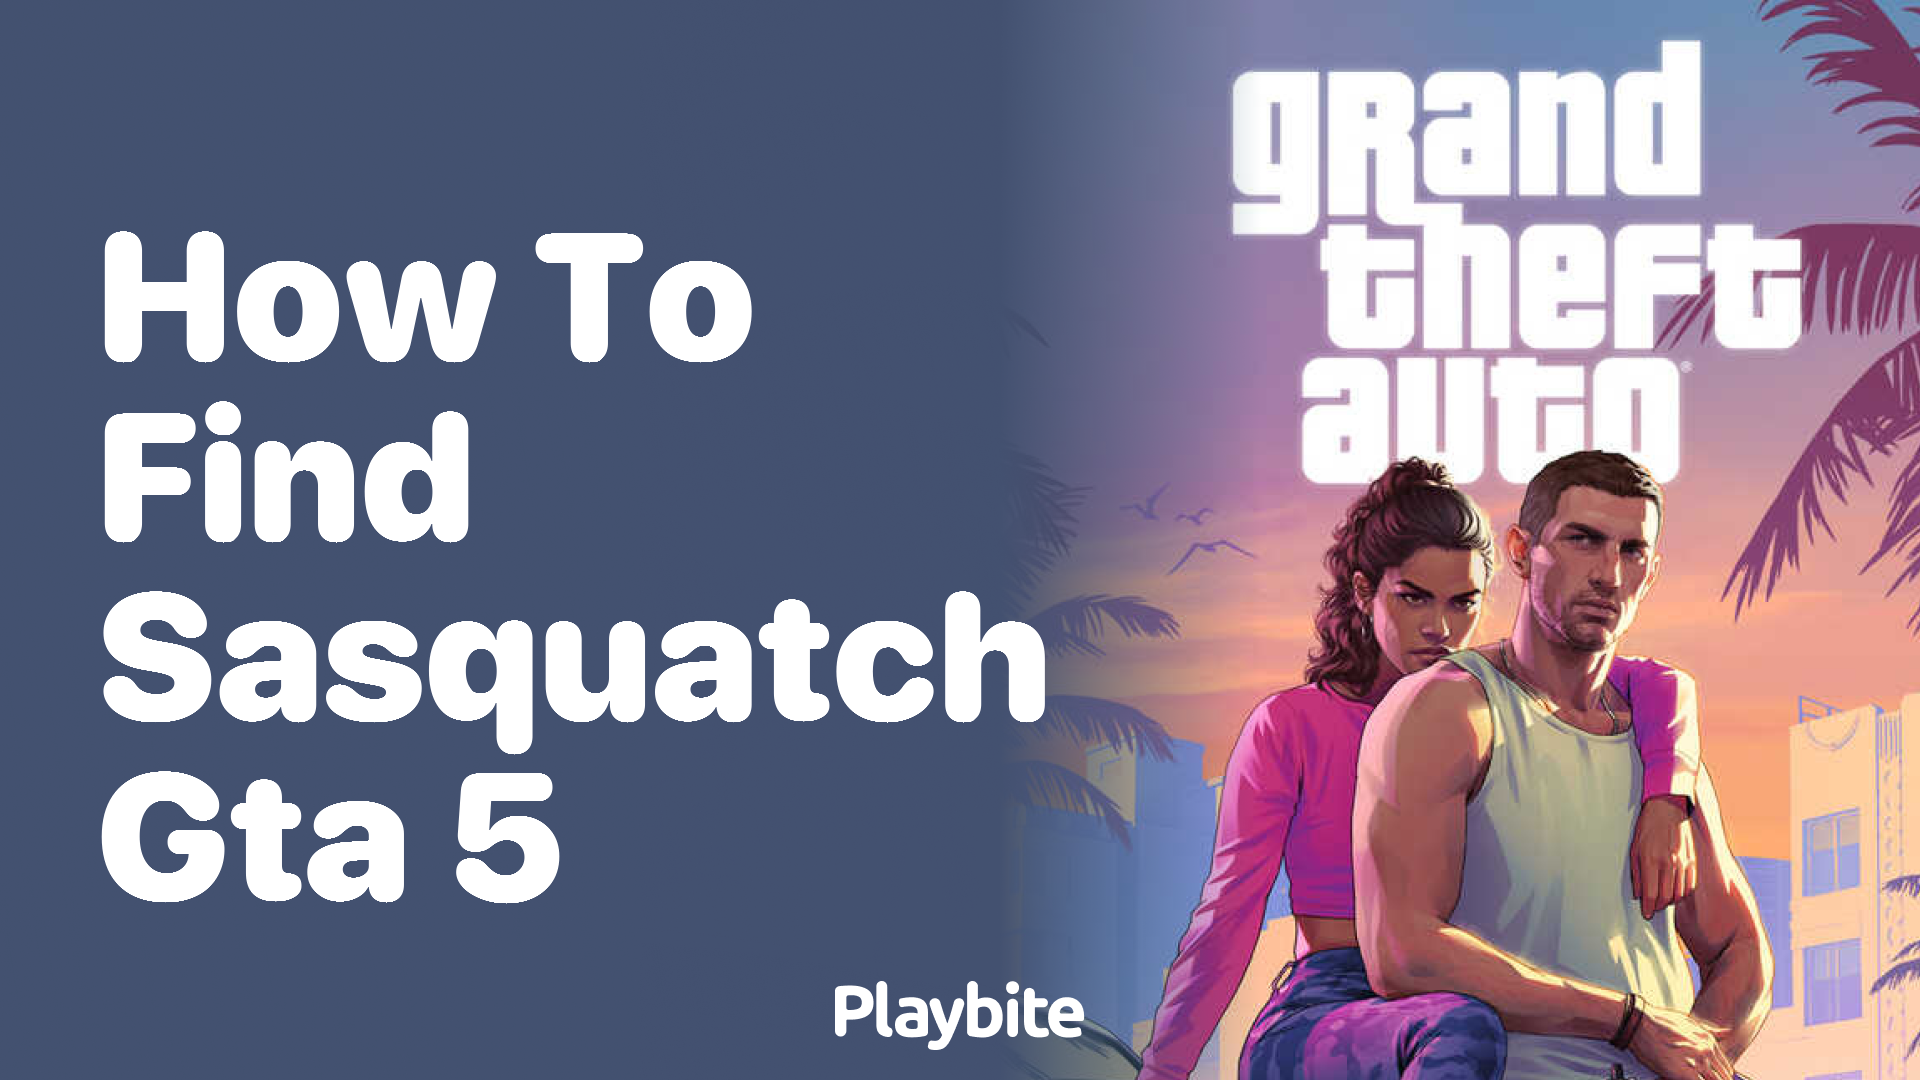 How to Find Sasquatch in GTA 5